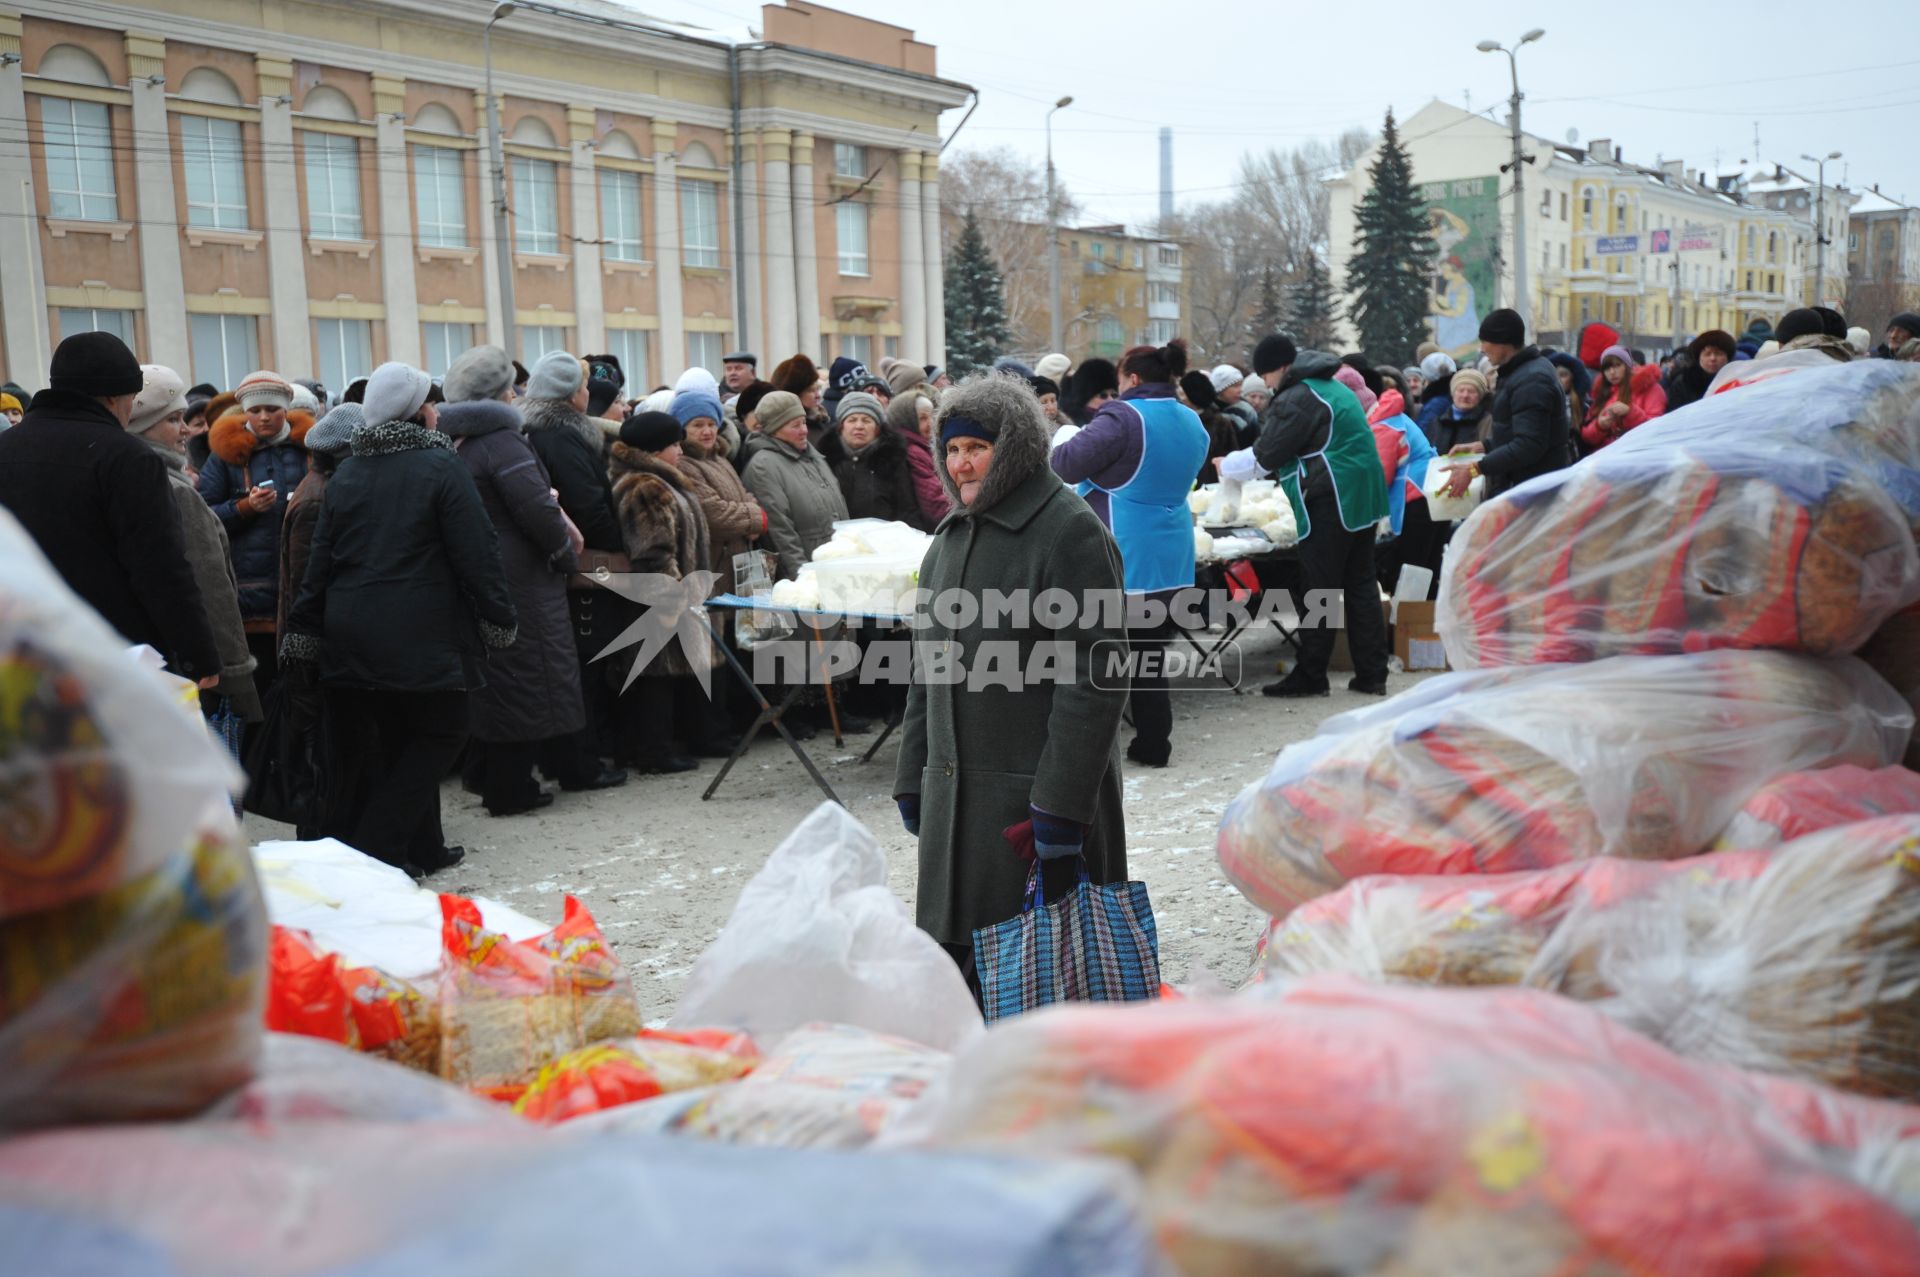 Макеевка. Социальная ярмарка недорогих продуктов, организованная властью ДНР. На снимке: люди стоят в очереди за продуктами.